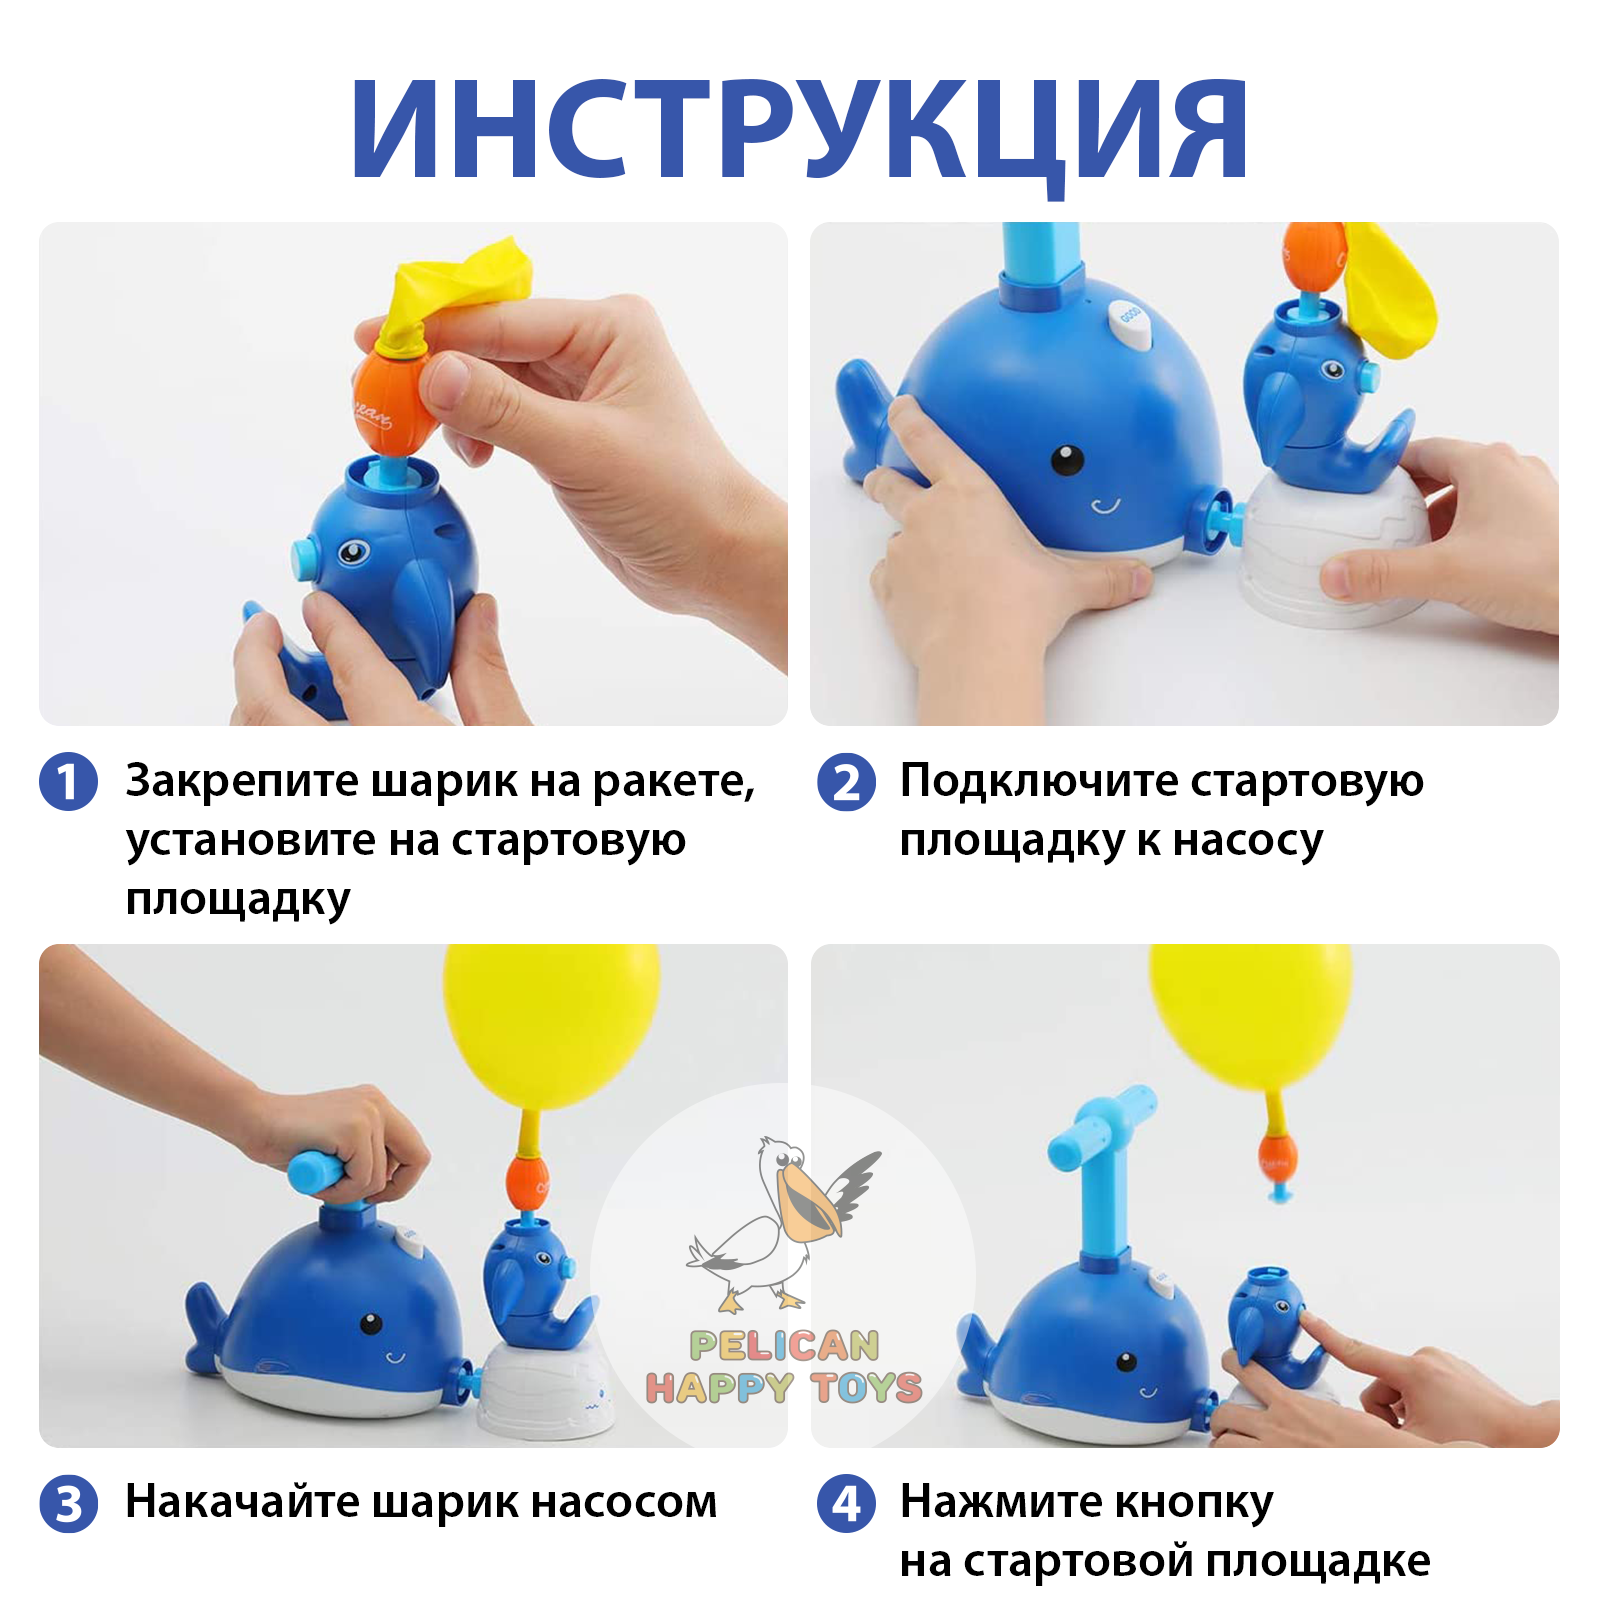 Игровой набор транспорт PELICAN HAPPY TOYS машинки с воздушными шариками для детей - фото 5